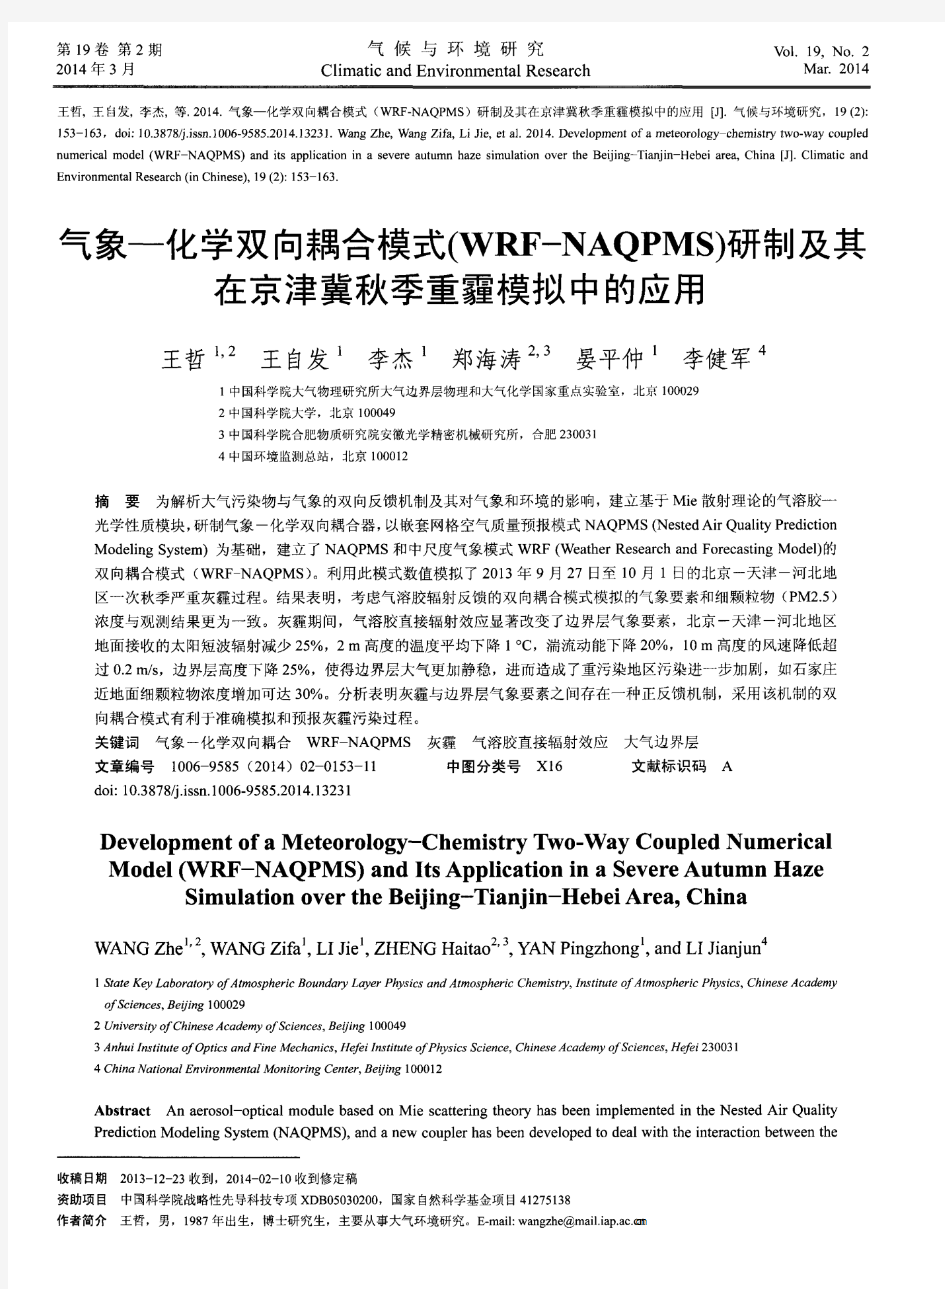 气象-化学双向耦合模式(WRF—NAQPMS)研制及其在京津冀秋季重霾模拟中的应用